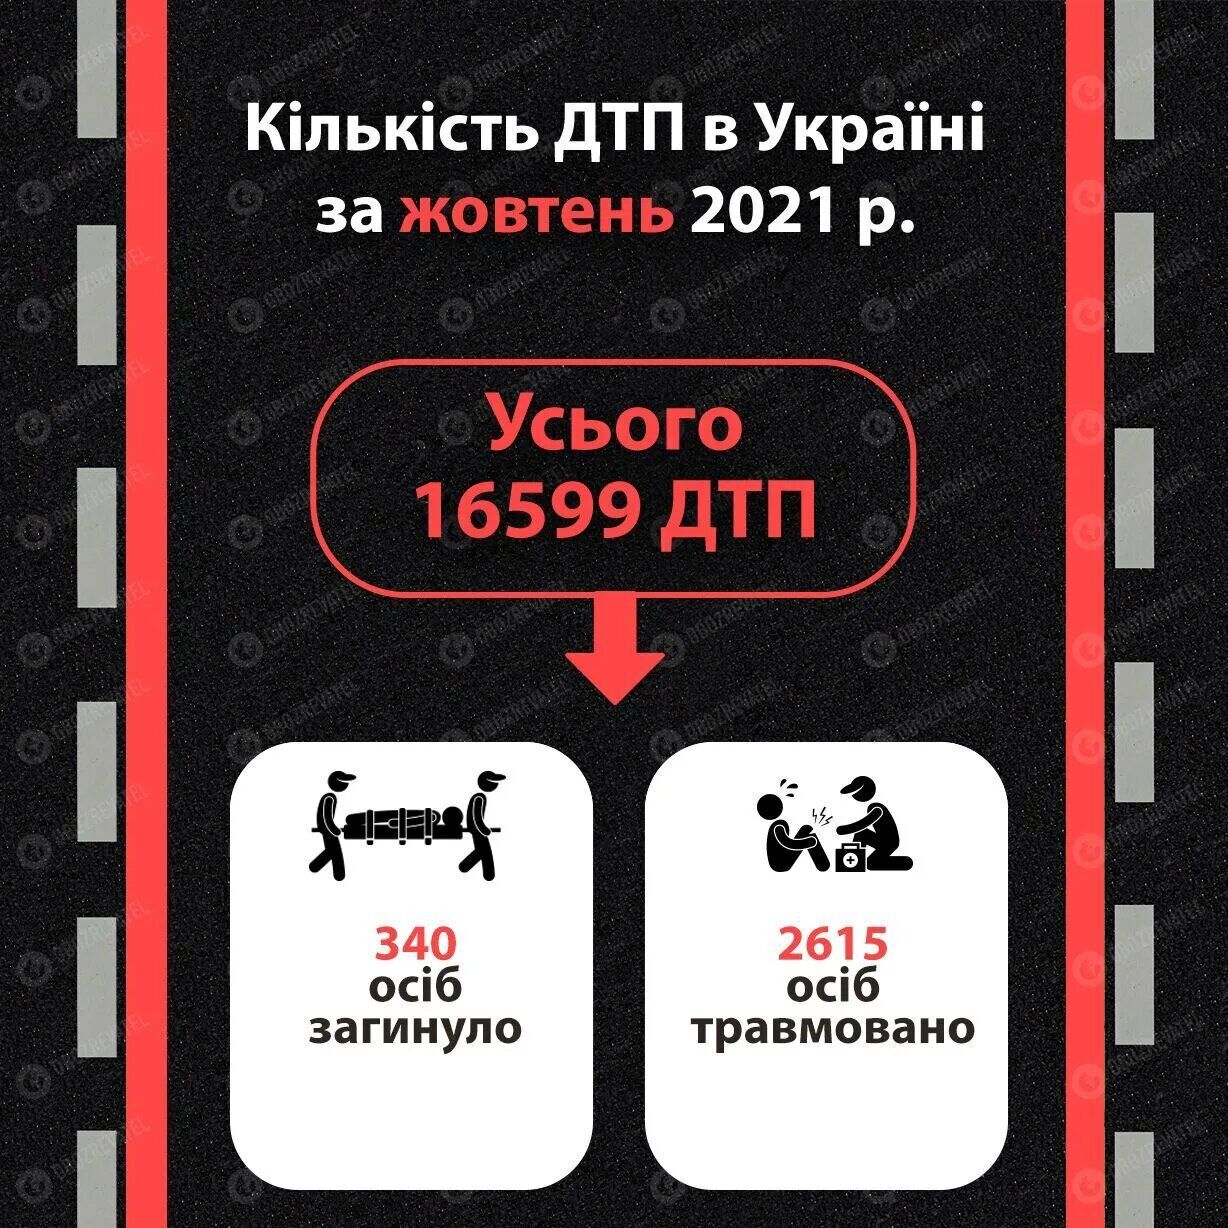 Статистика ДТП в Україні у жовтні 2021